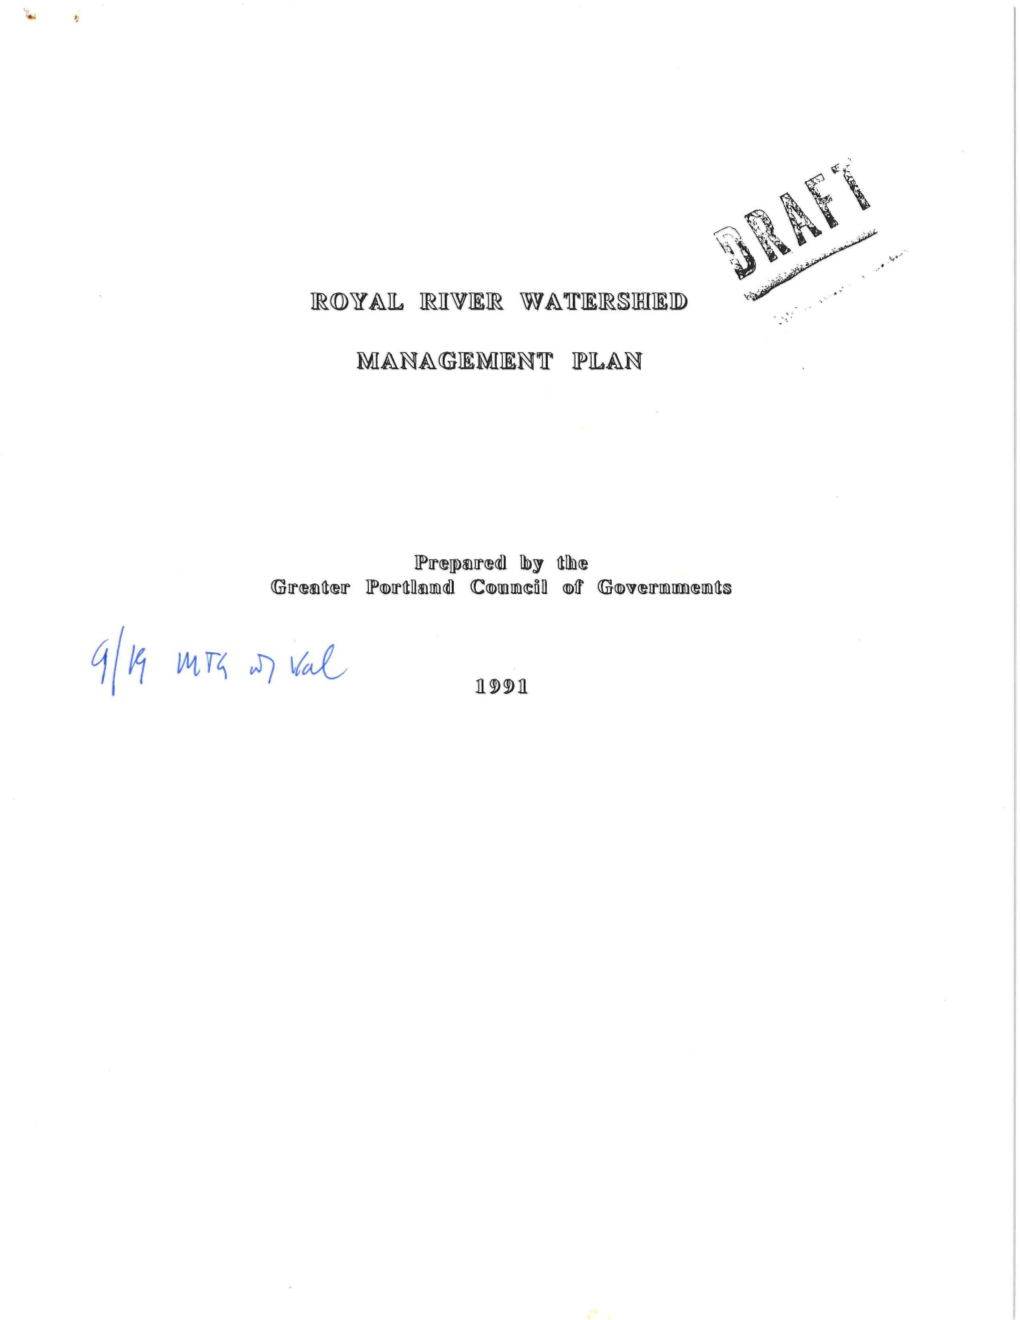 1991 Royal River Watershed Management Plan (PDF)